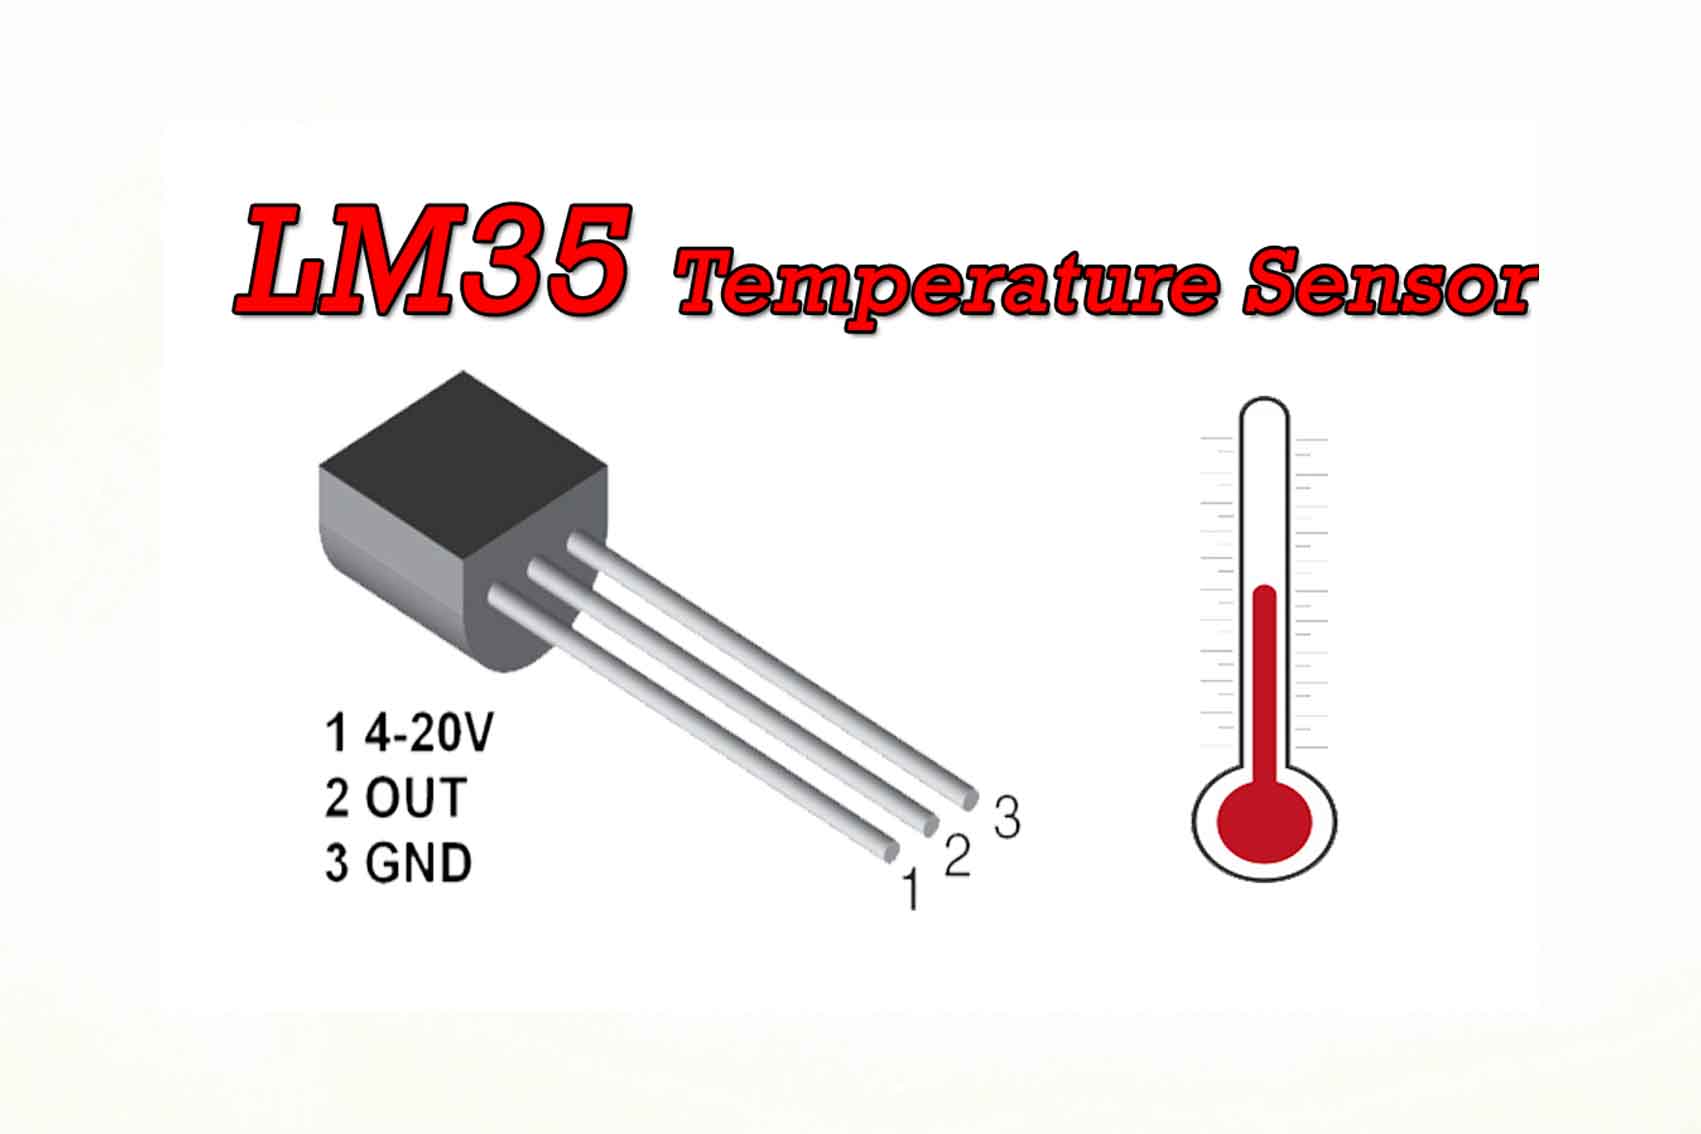 Cấu tạo và nguyên lý làm việc của cảm biến nhiệt độ lm35